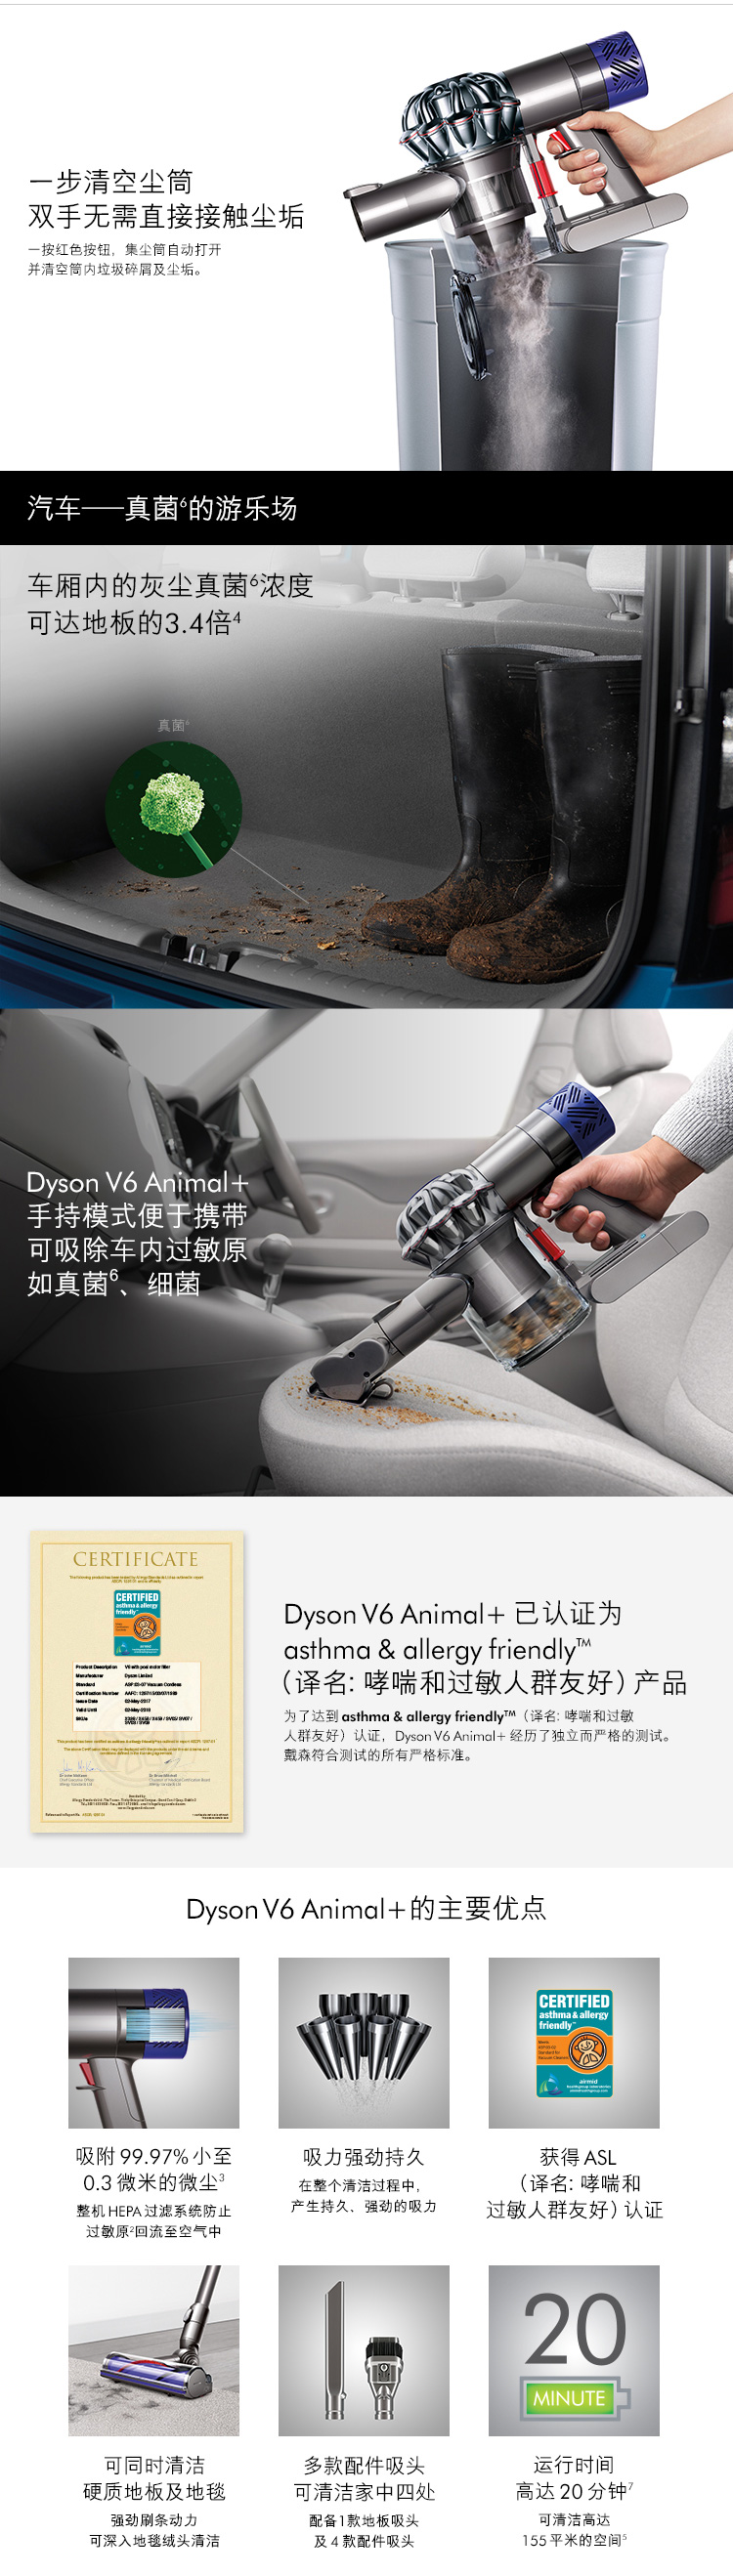 戴森手持式吸尘器SV08 DYSON V6 ANIMAL+